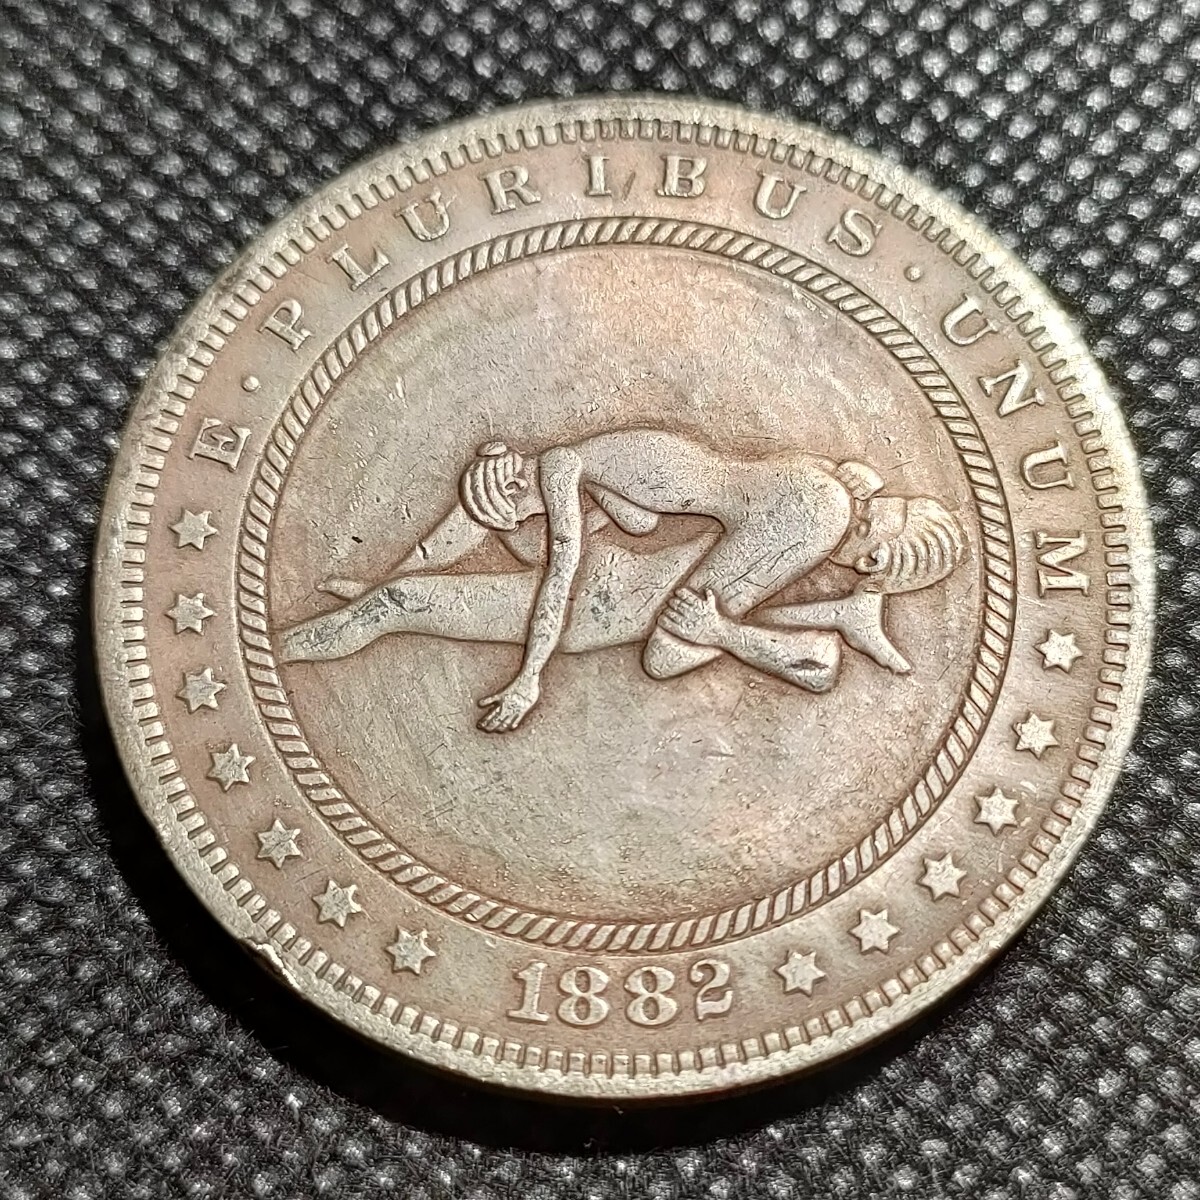 7529 アメリカ古銭 ルンペン 約38mm イーグル チャレンジコイン ゴルフマーカー コイン アンティーク ホーボーの画像1